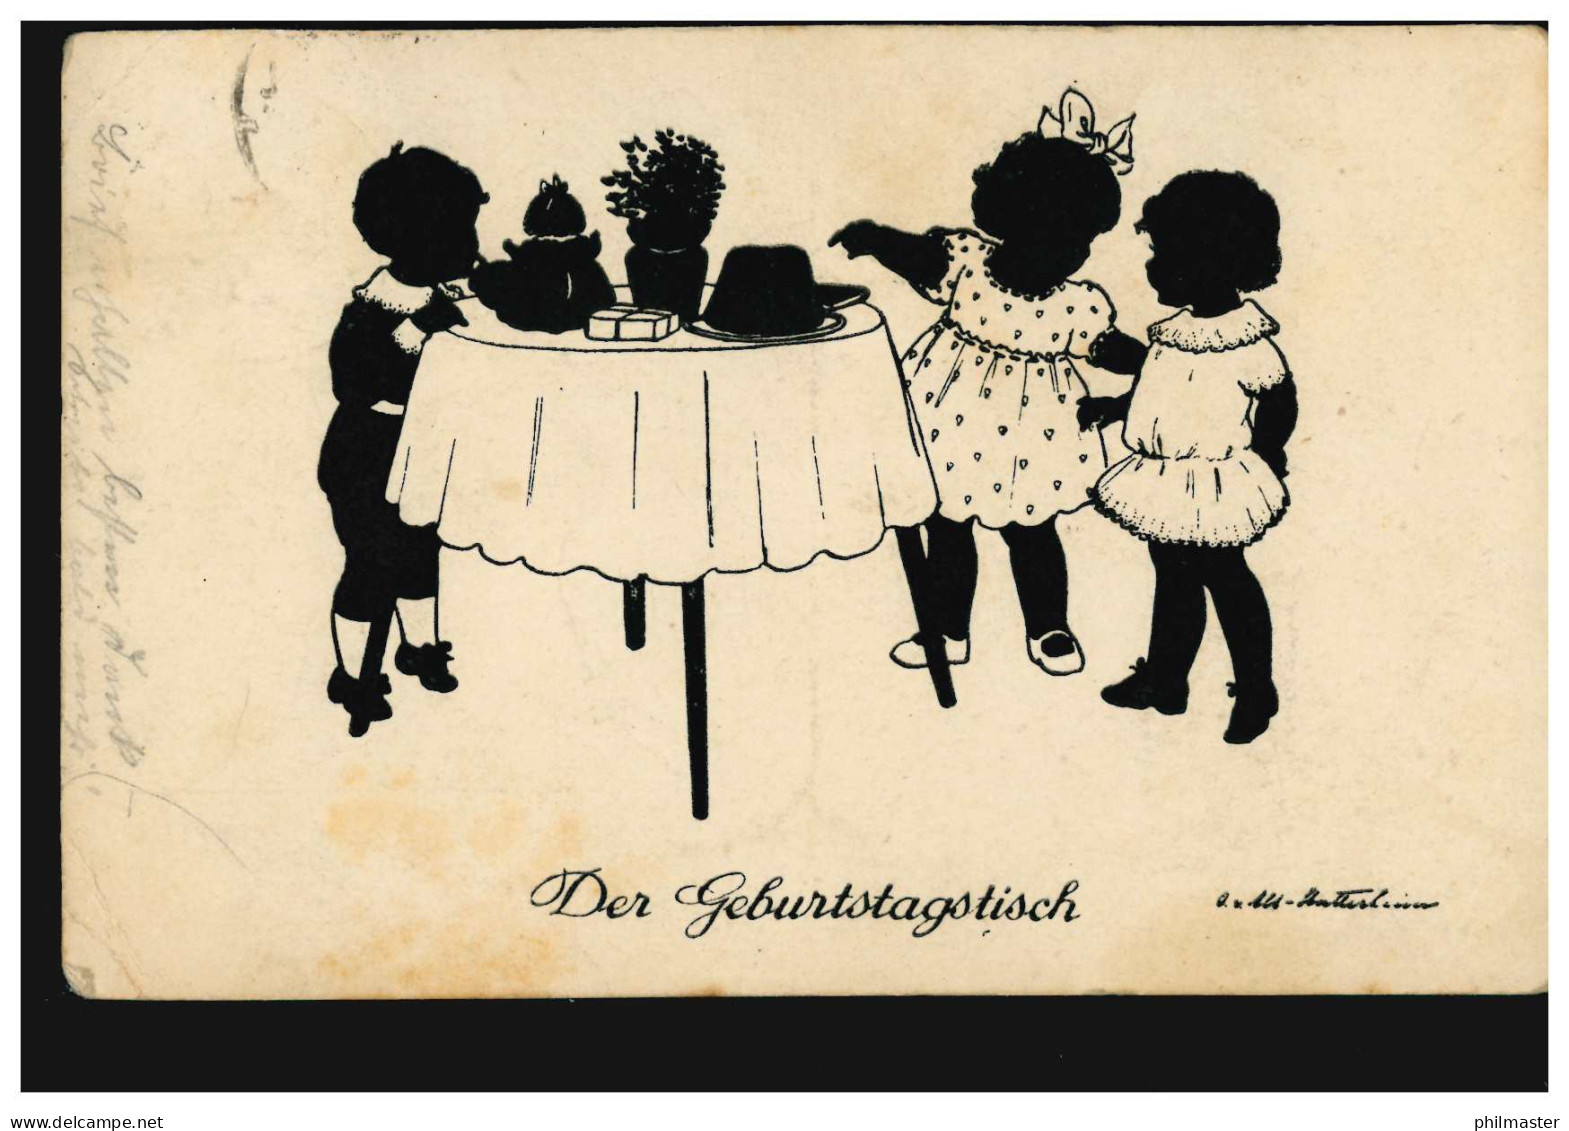 Scherenschnitt-AK Der Geburtstagstisch, Verlag G.K.V. Berlin, RHEYDT 23.6.1926 - Siluette